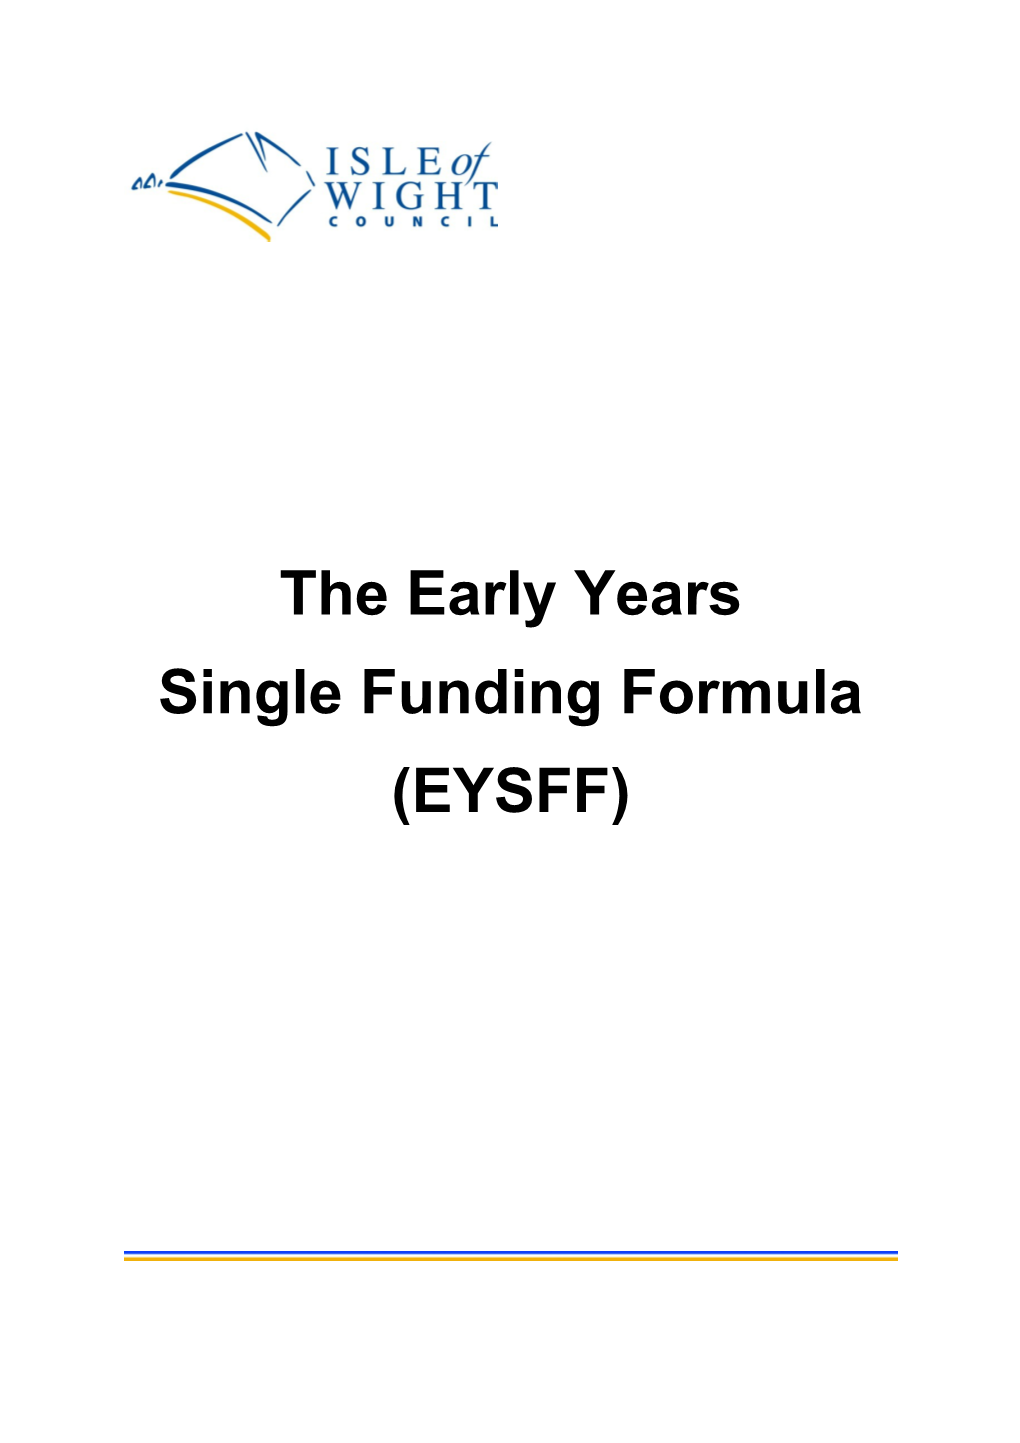 Single Funding Formula